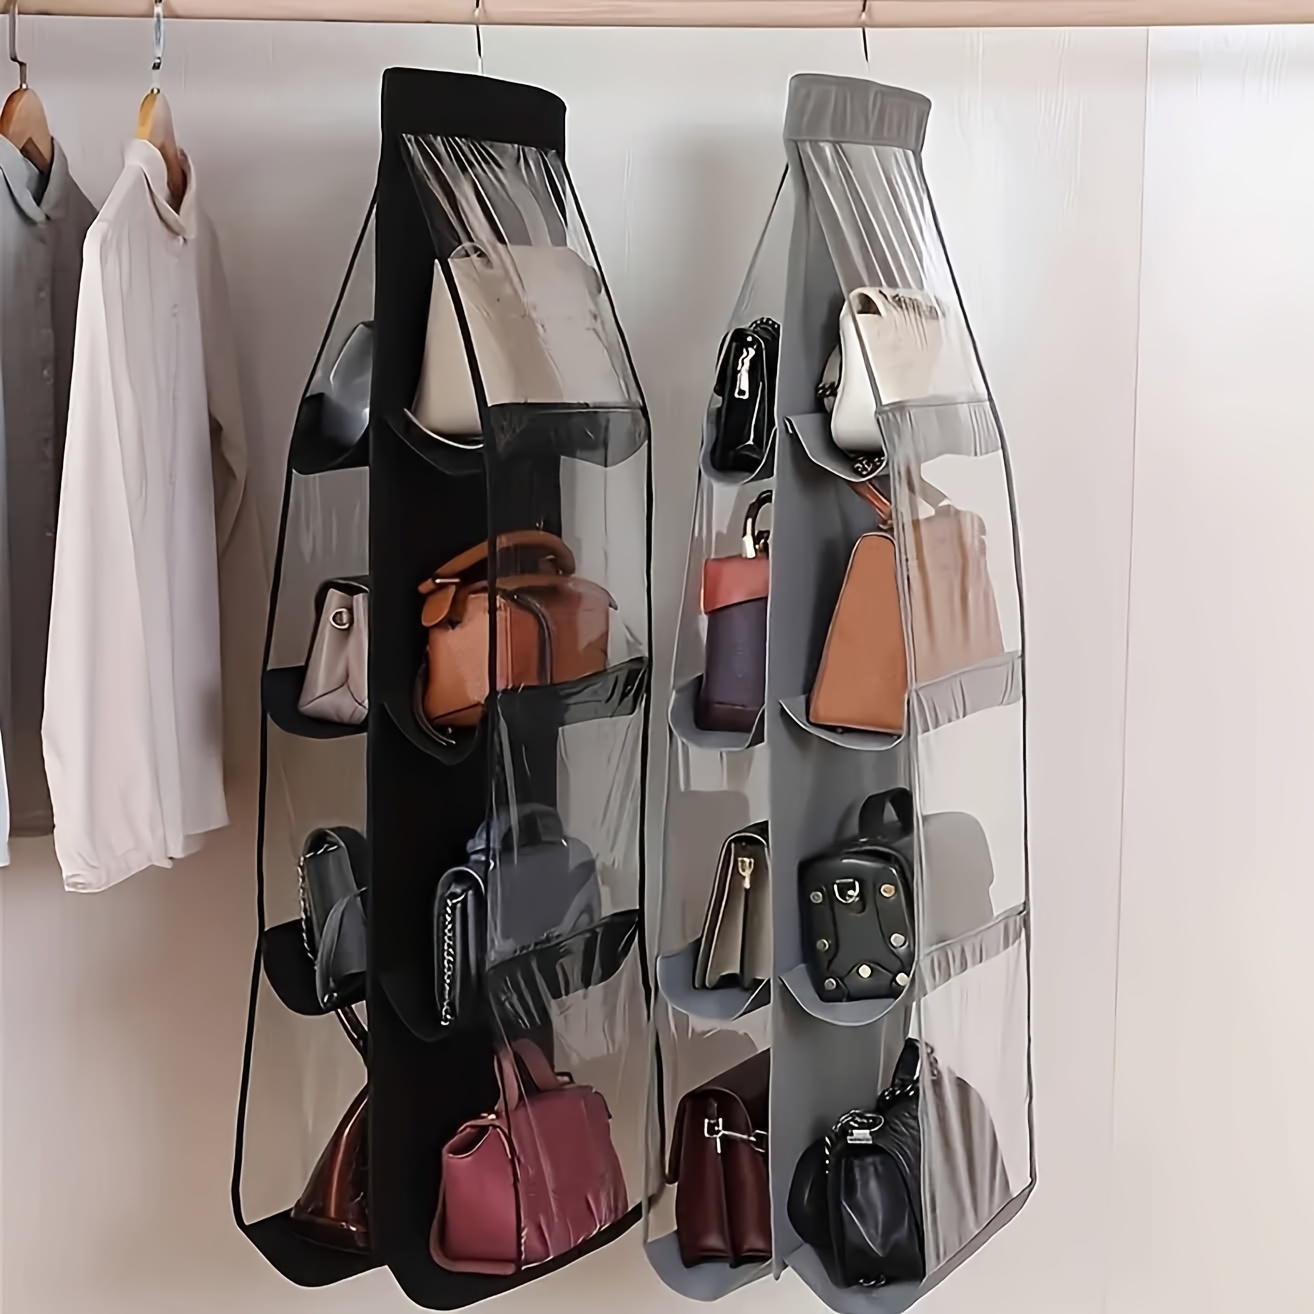 

1pc 6/8 Pockets Hanging Bag Organizer, Closet Wardrobe Storage Bag, Household Hanging Rack & Holder